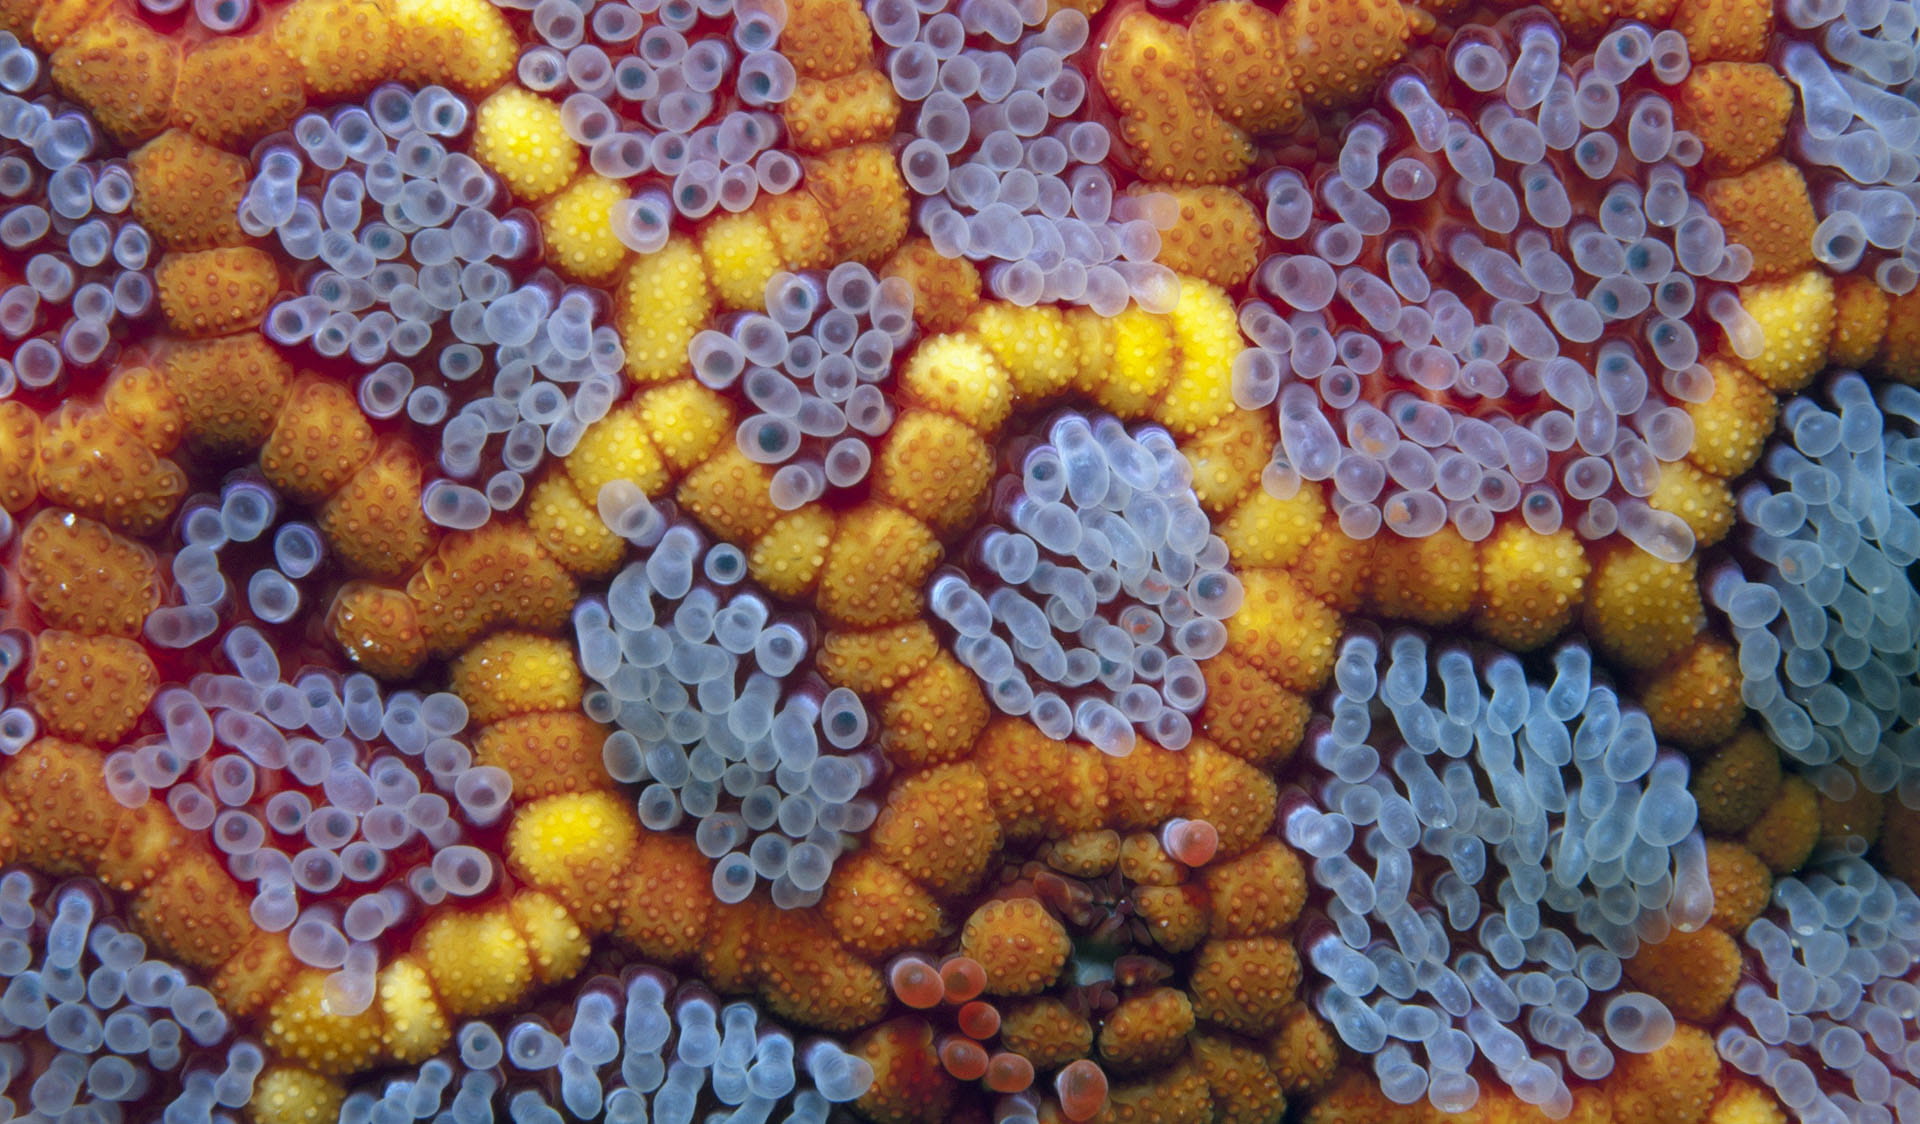 Underwater close up of echinoderm and invertebrates